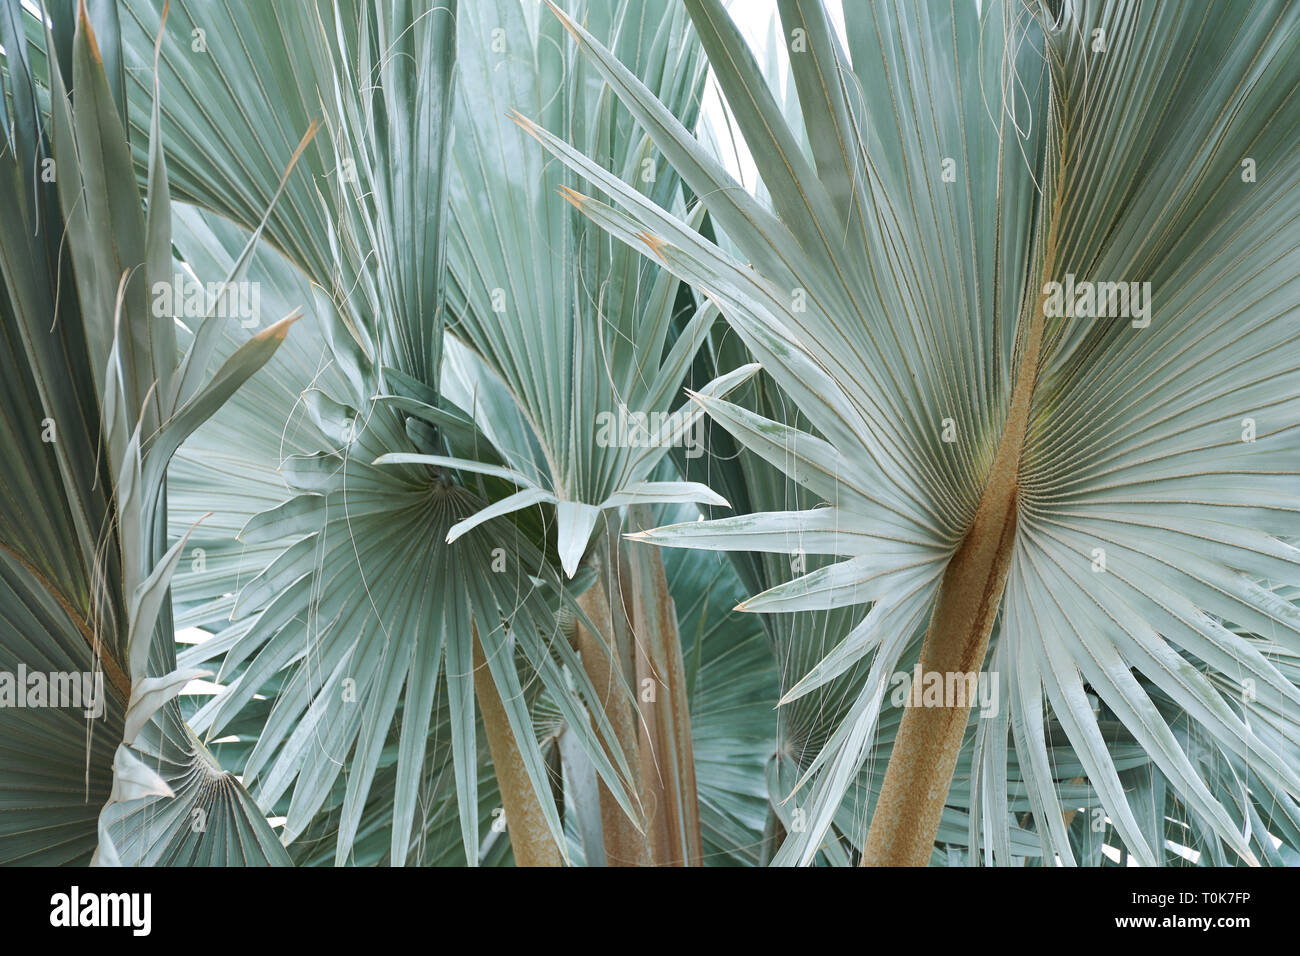 Schönen tropischen Blatt Textur, grünes Laub Natur Hintergrund des grünen Grases und exotische Blätter Garten Stockfoto